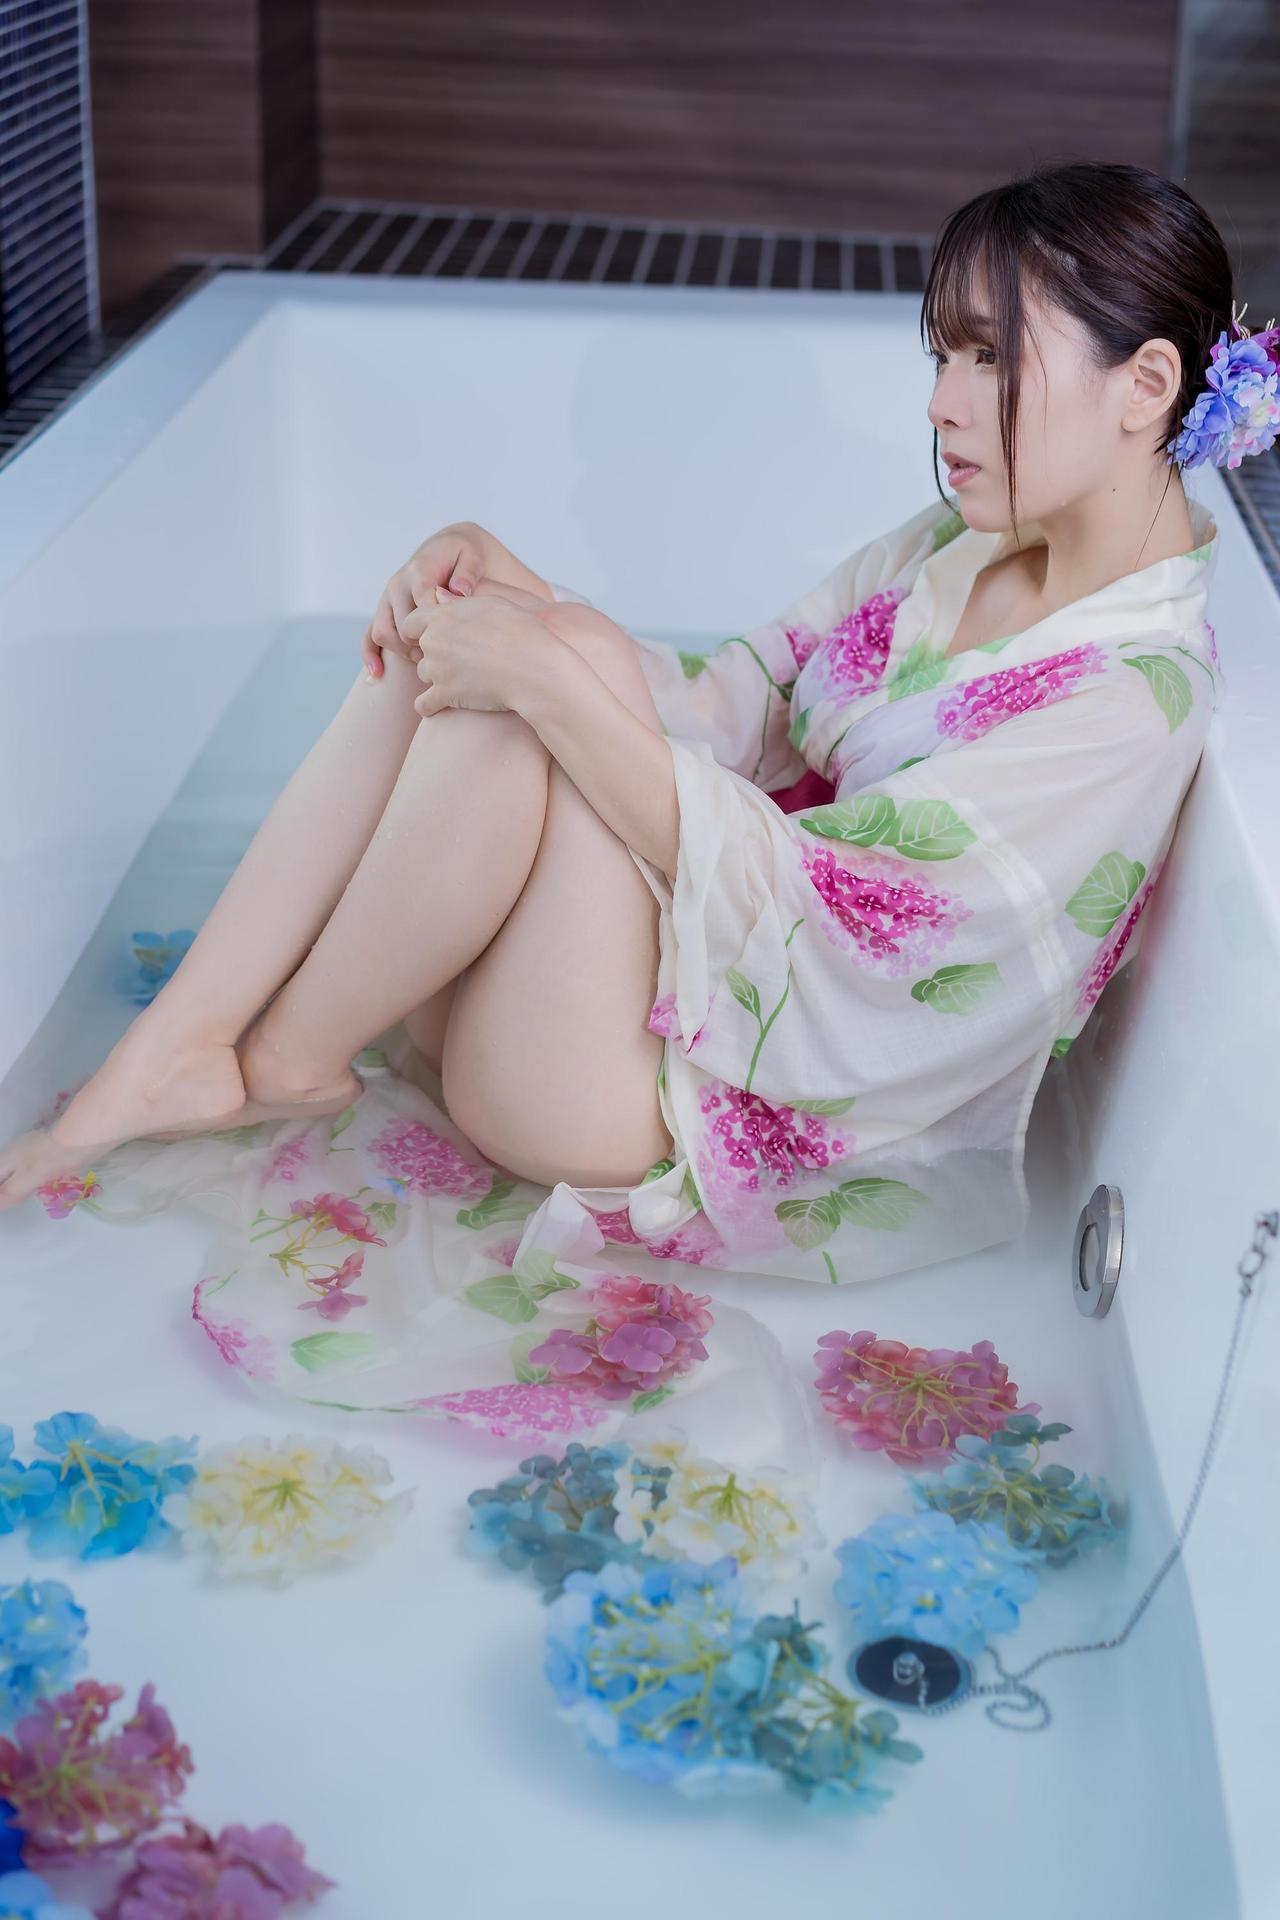 Mitsuki Goronzoku ゴロン族美月 フェチグラビア写真集 「translucent」 Set 03 Share Erotic Asian Girl Picture